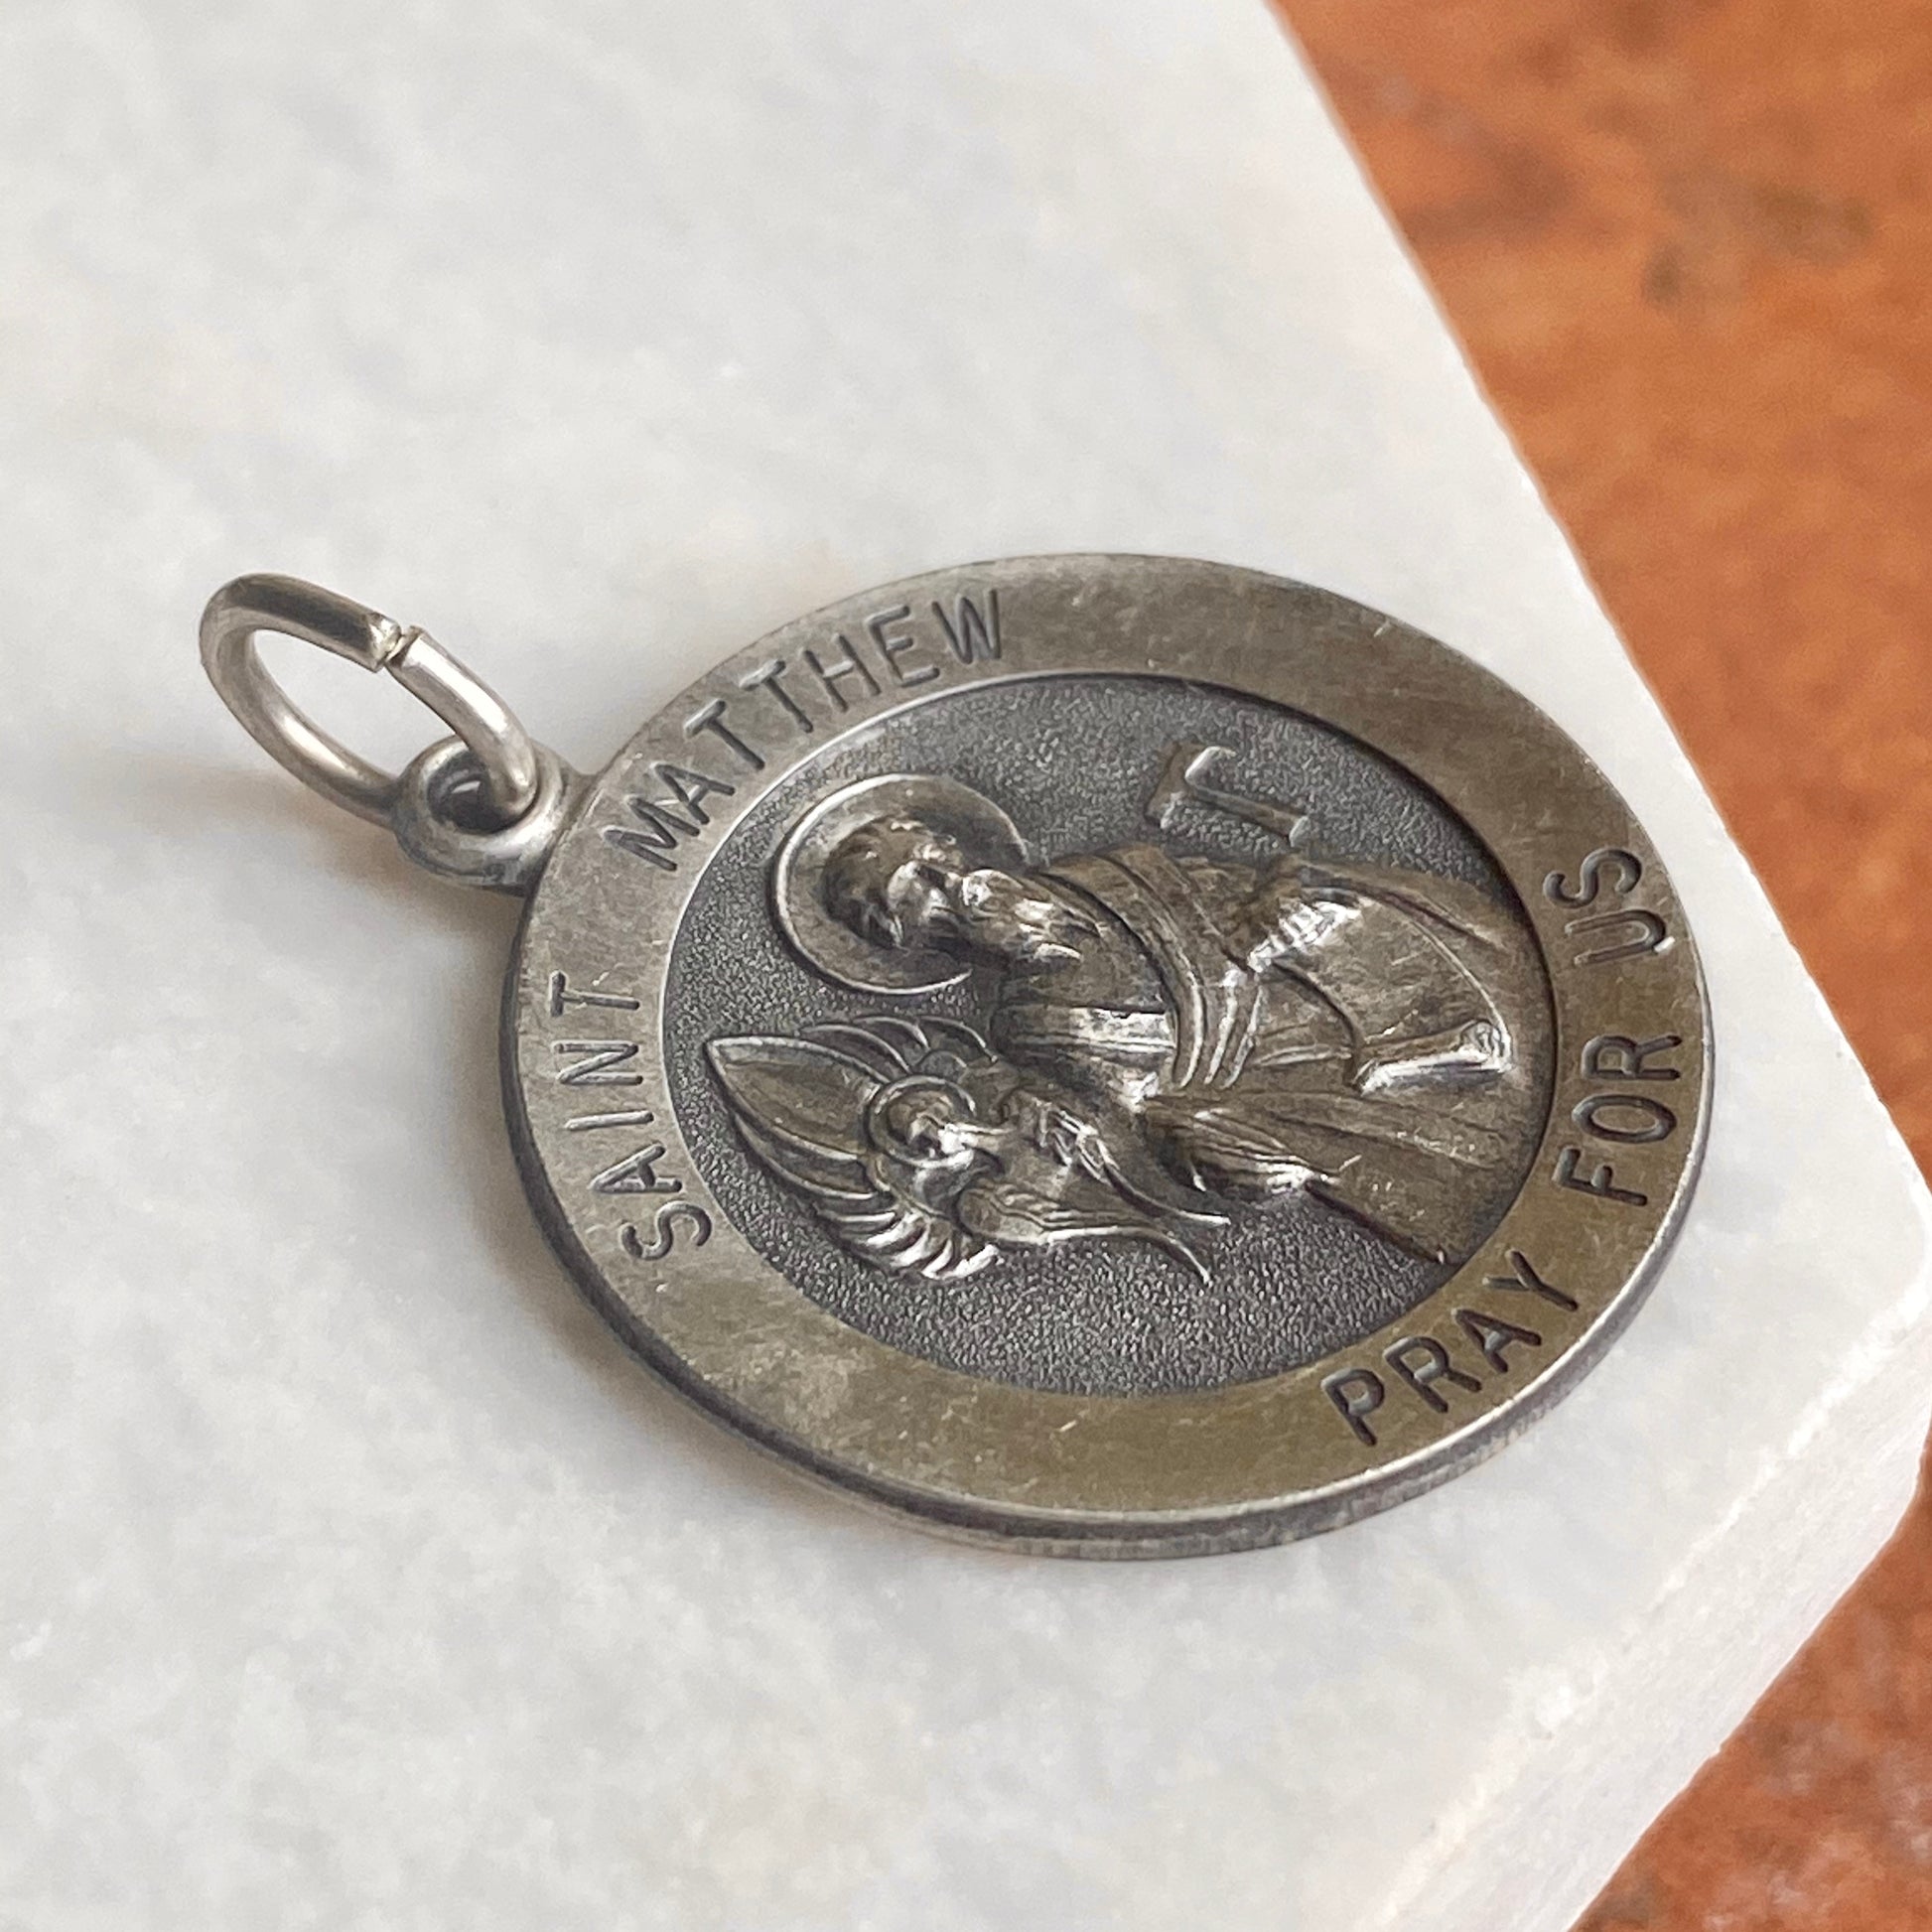 Sterling Silver Antiqued Saint Matthew Round Medal Pendant 31mm, Sterling Silver Antiqued Saint Matthew Round Medal Pendant 31mm - Legacy Saint Jewelry